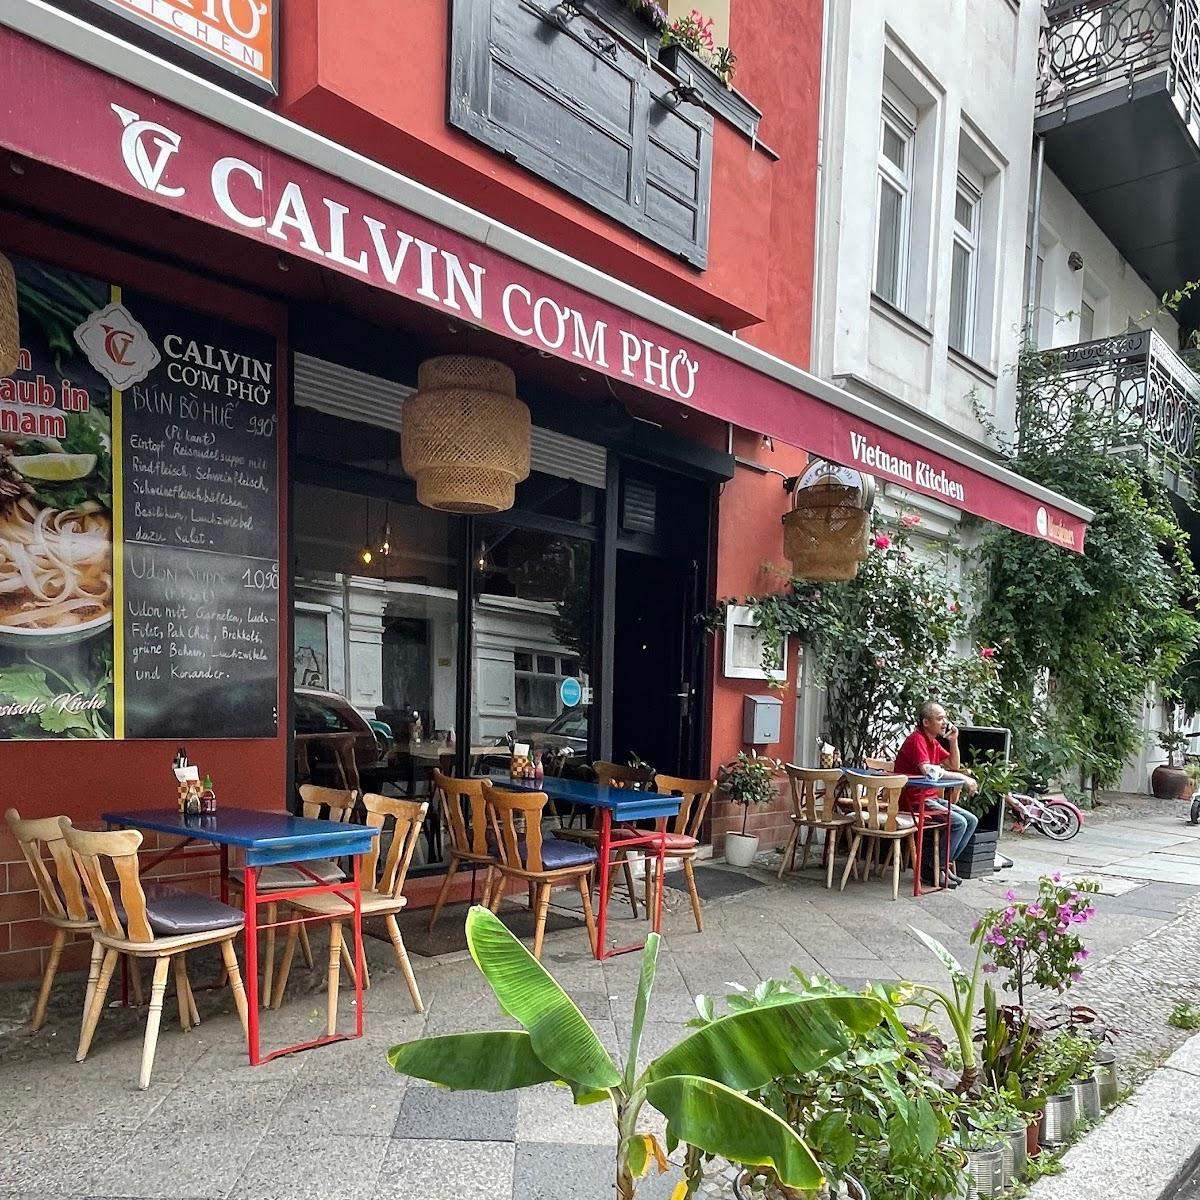 Restaurant "Calvin Com Pho" in Berlin